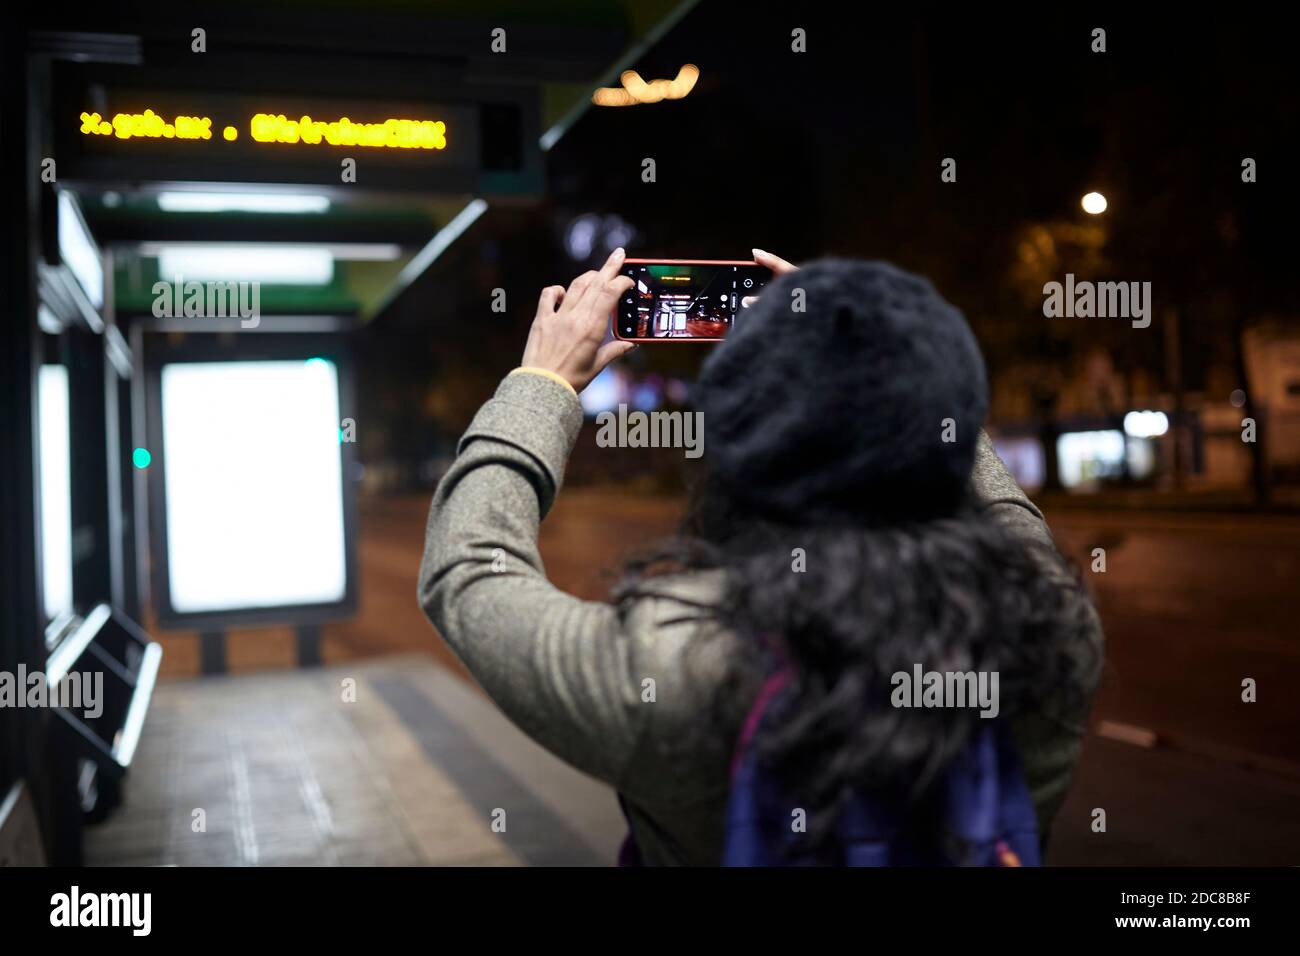 Frau, die nachts in einer Bushaltestelle Fotos gemacht hat Stockfoto